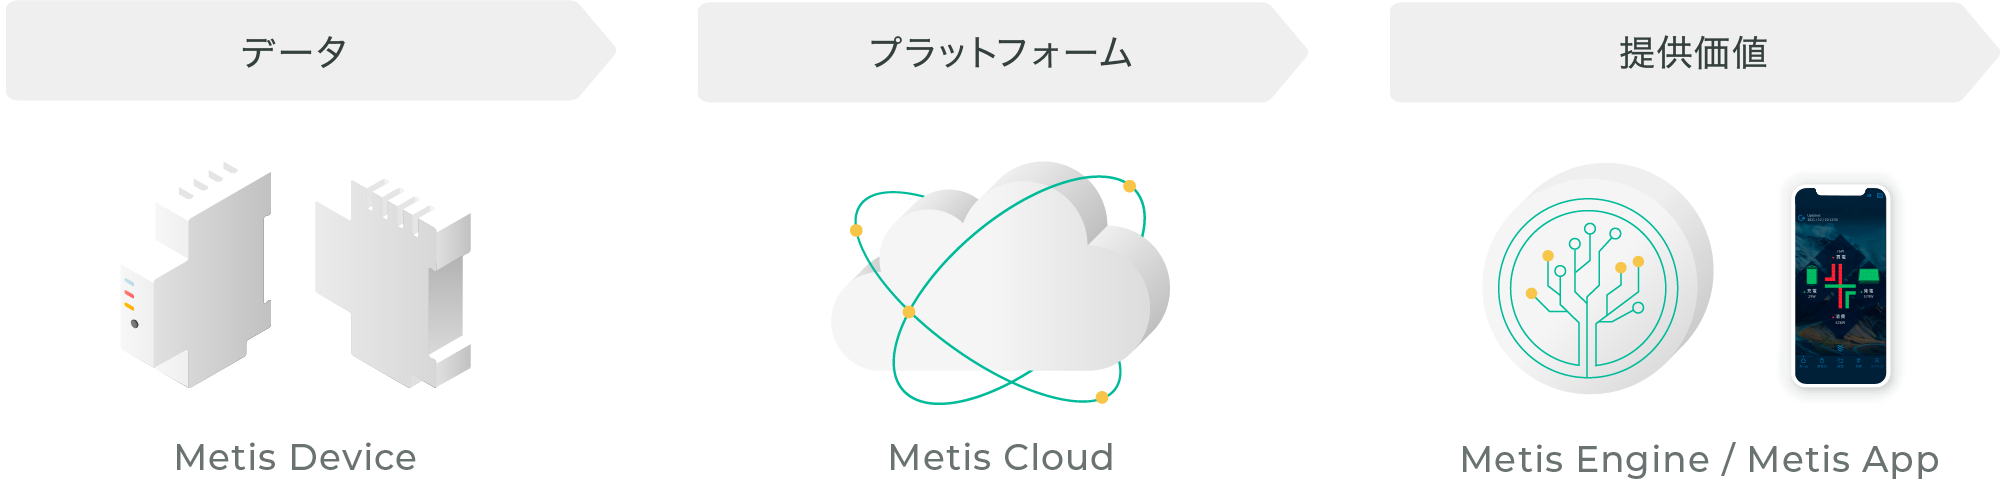 データ Metis Device > プラットフォーム Metis Cloud > 提供価値 Metis App / Metis Engine